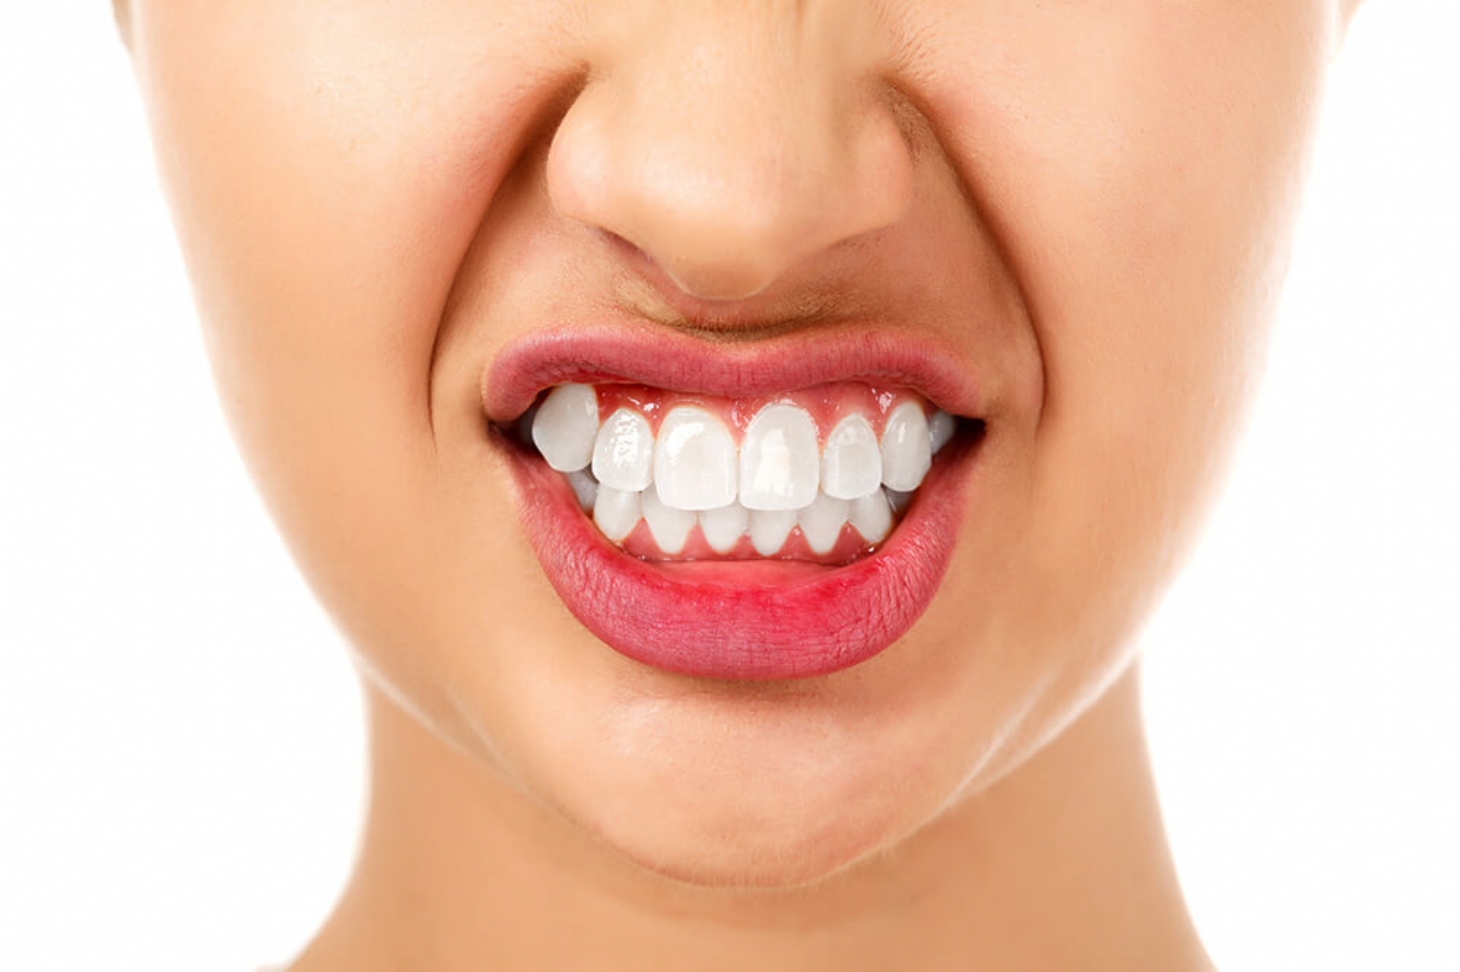 Estresse e ansiedade levam a aumento de dentes quebrados, dizem dentistas | Jornal da Orla